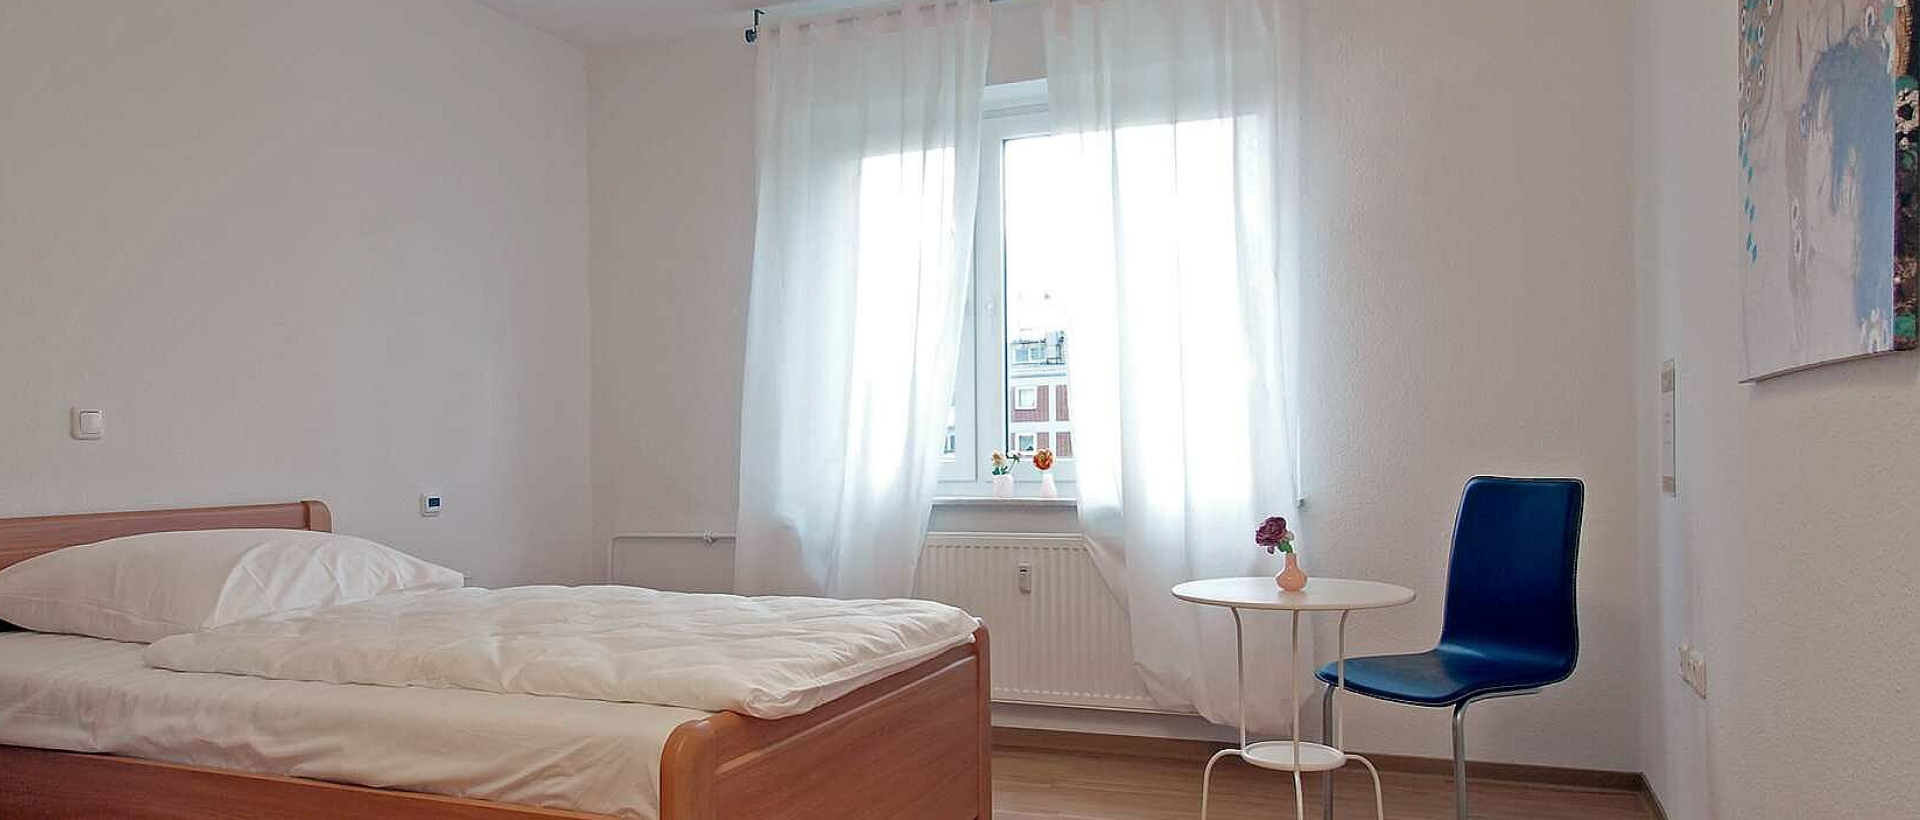 Ein Bett mit weißer Bettdecke steht in einem weißen Zimmer mit blauem Sessel